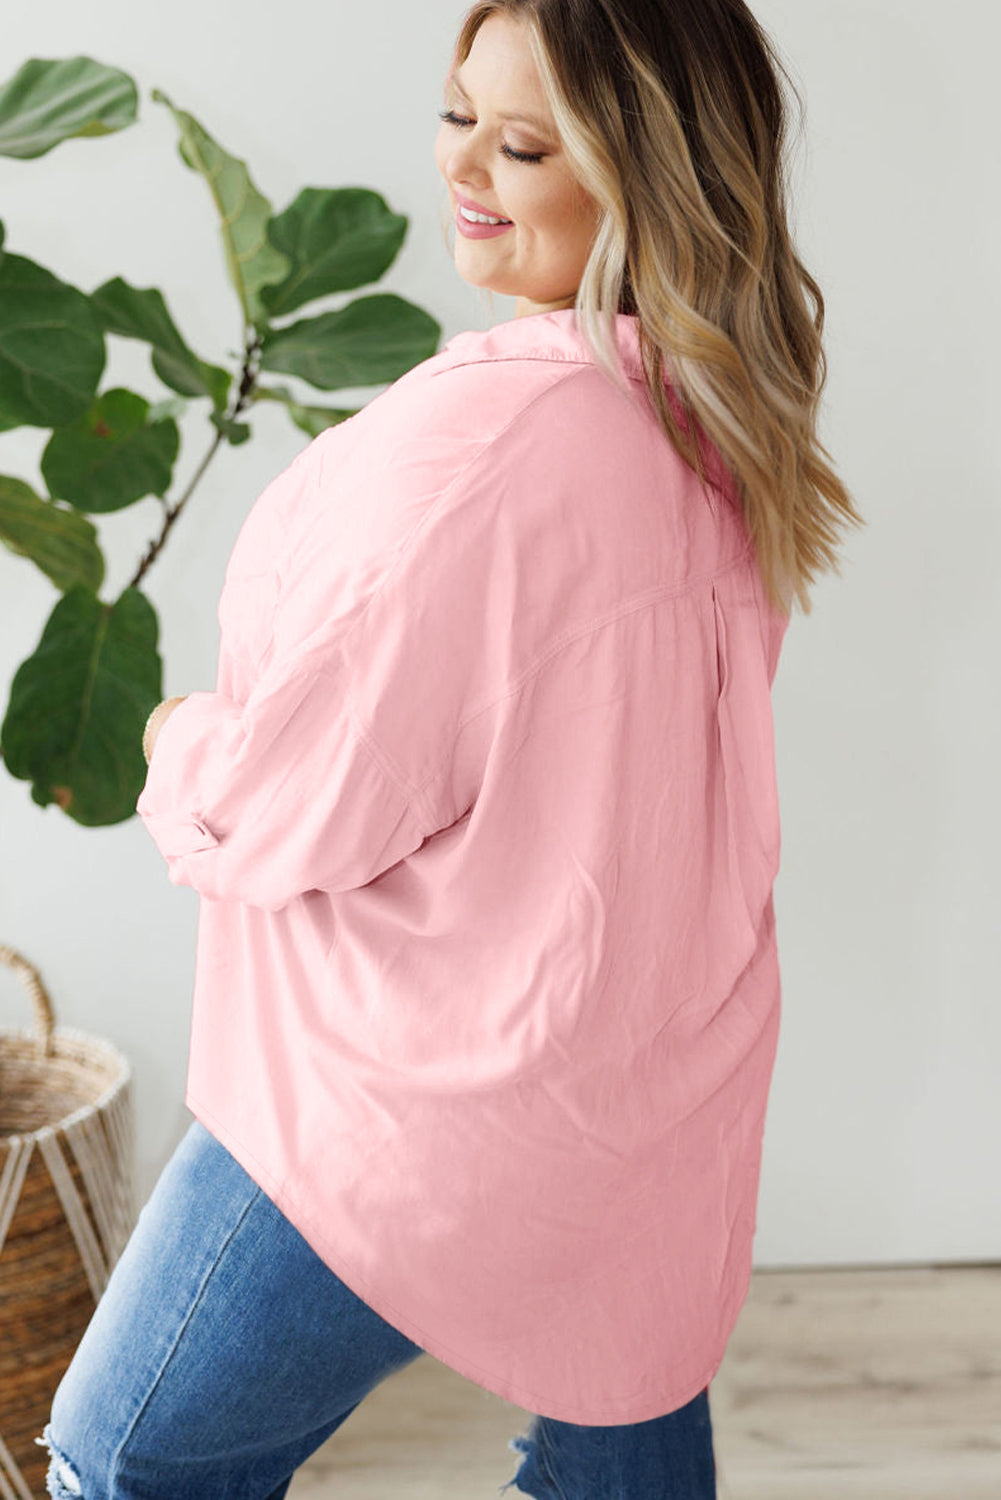 Rožnata majica velike velikosti z žepnimi rokavi in ​​gumbi